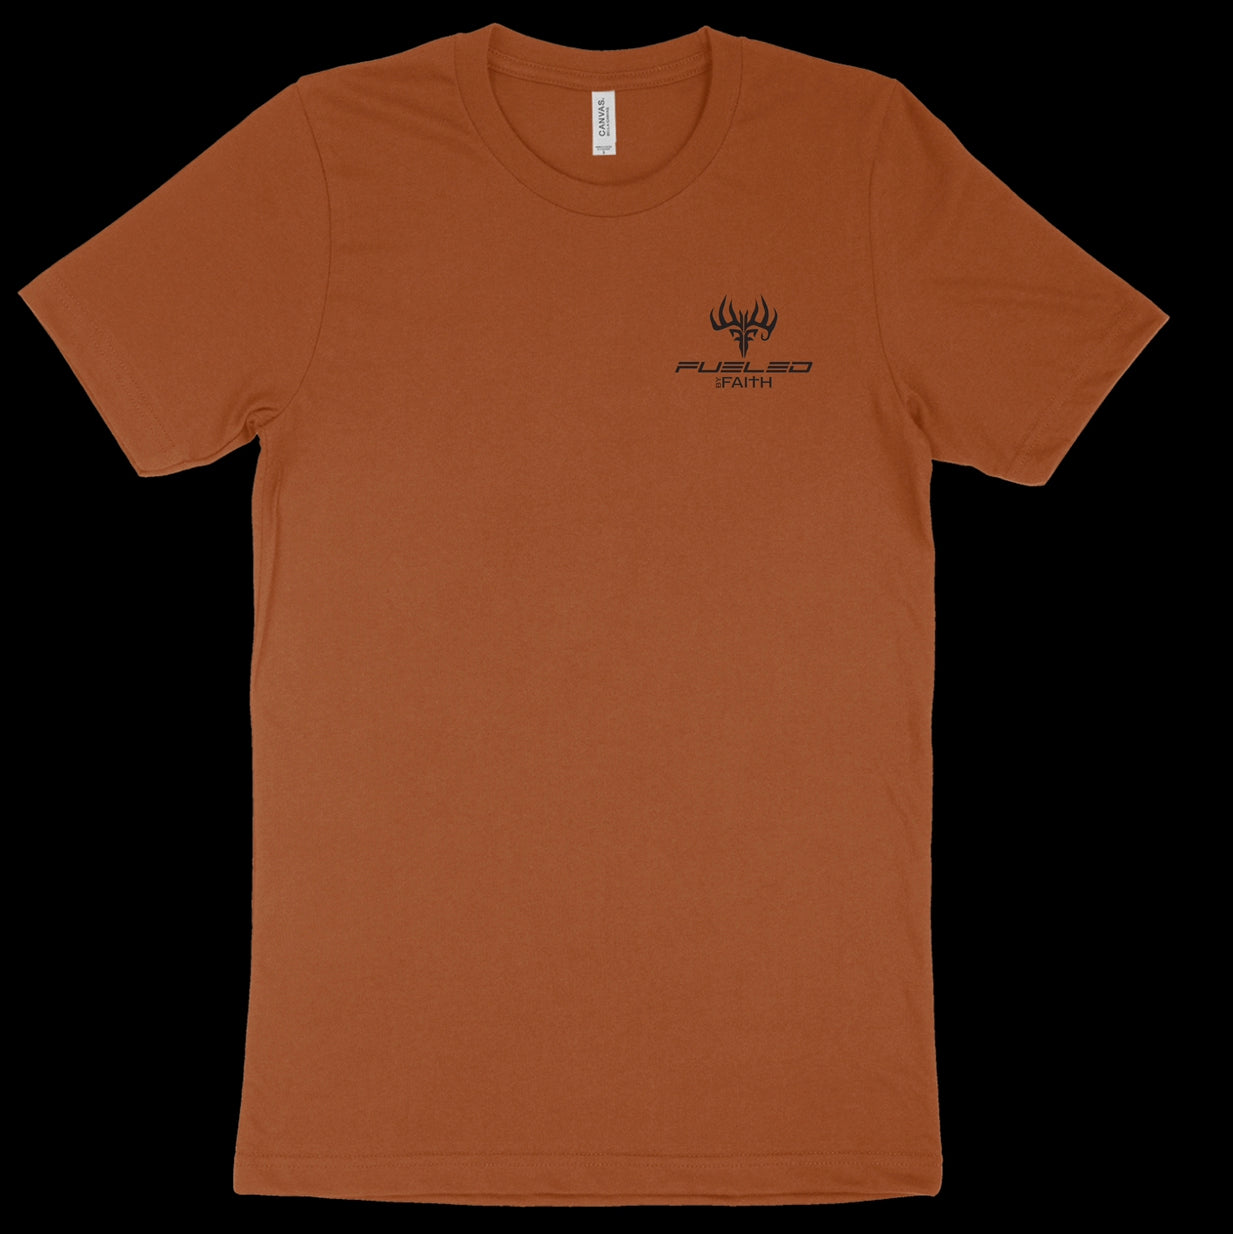 God Made A Deer Hunter T-Shirt